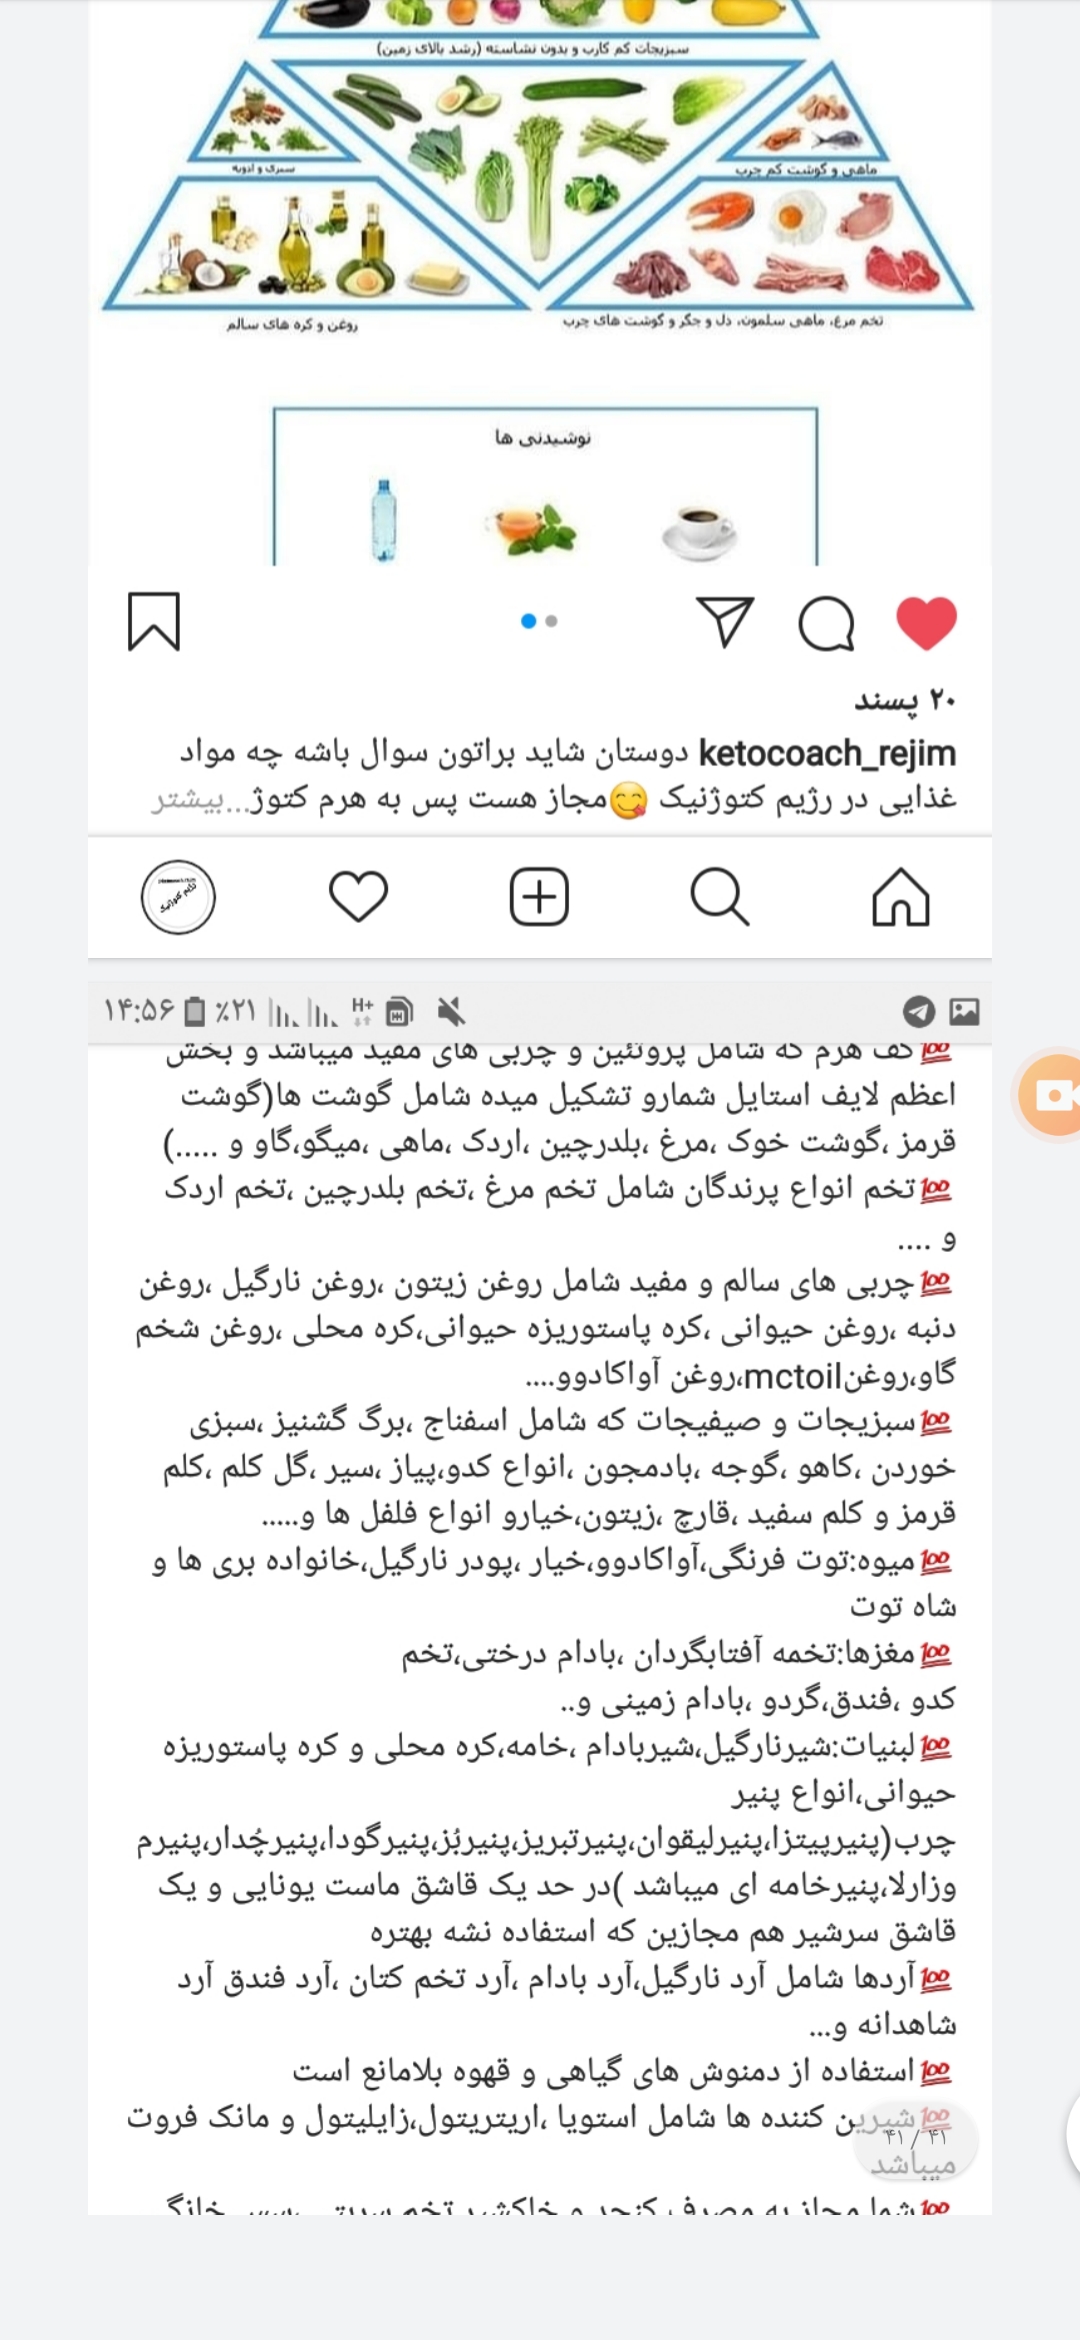 رژیم کتوژنیک دکتر کرمانی نی نی سایت